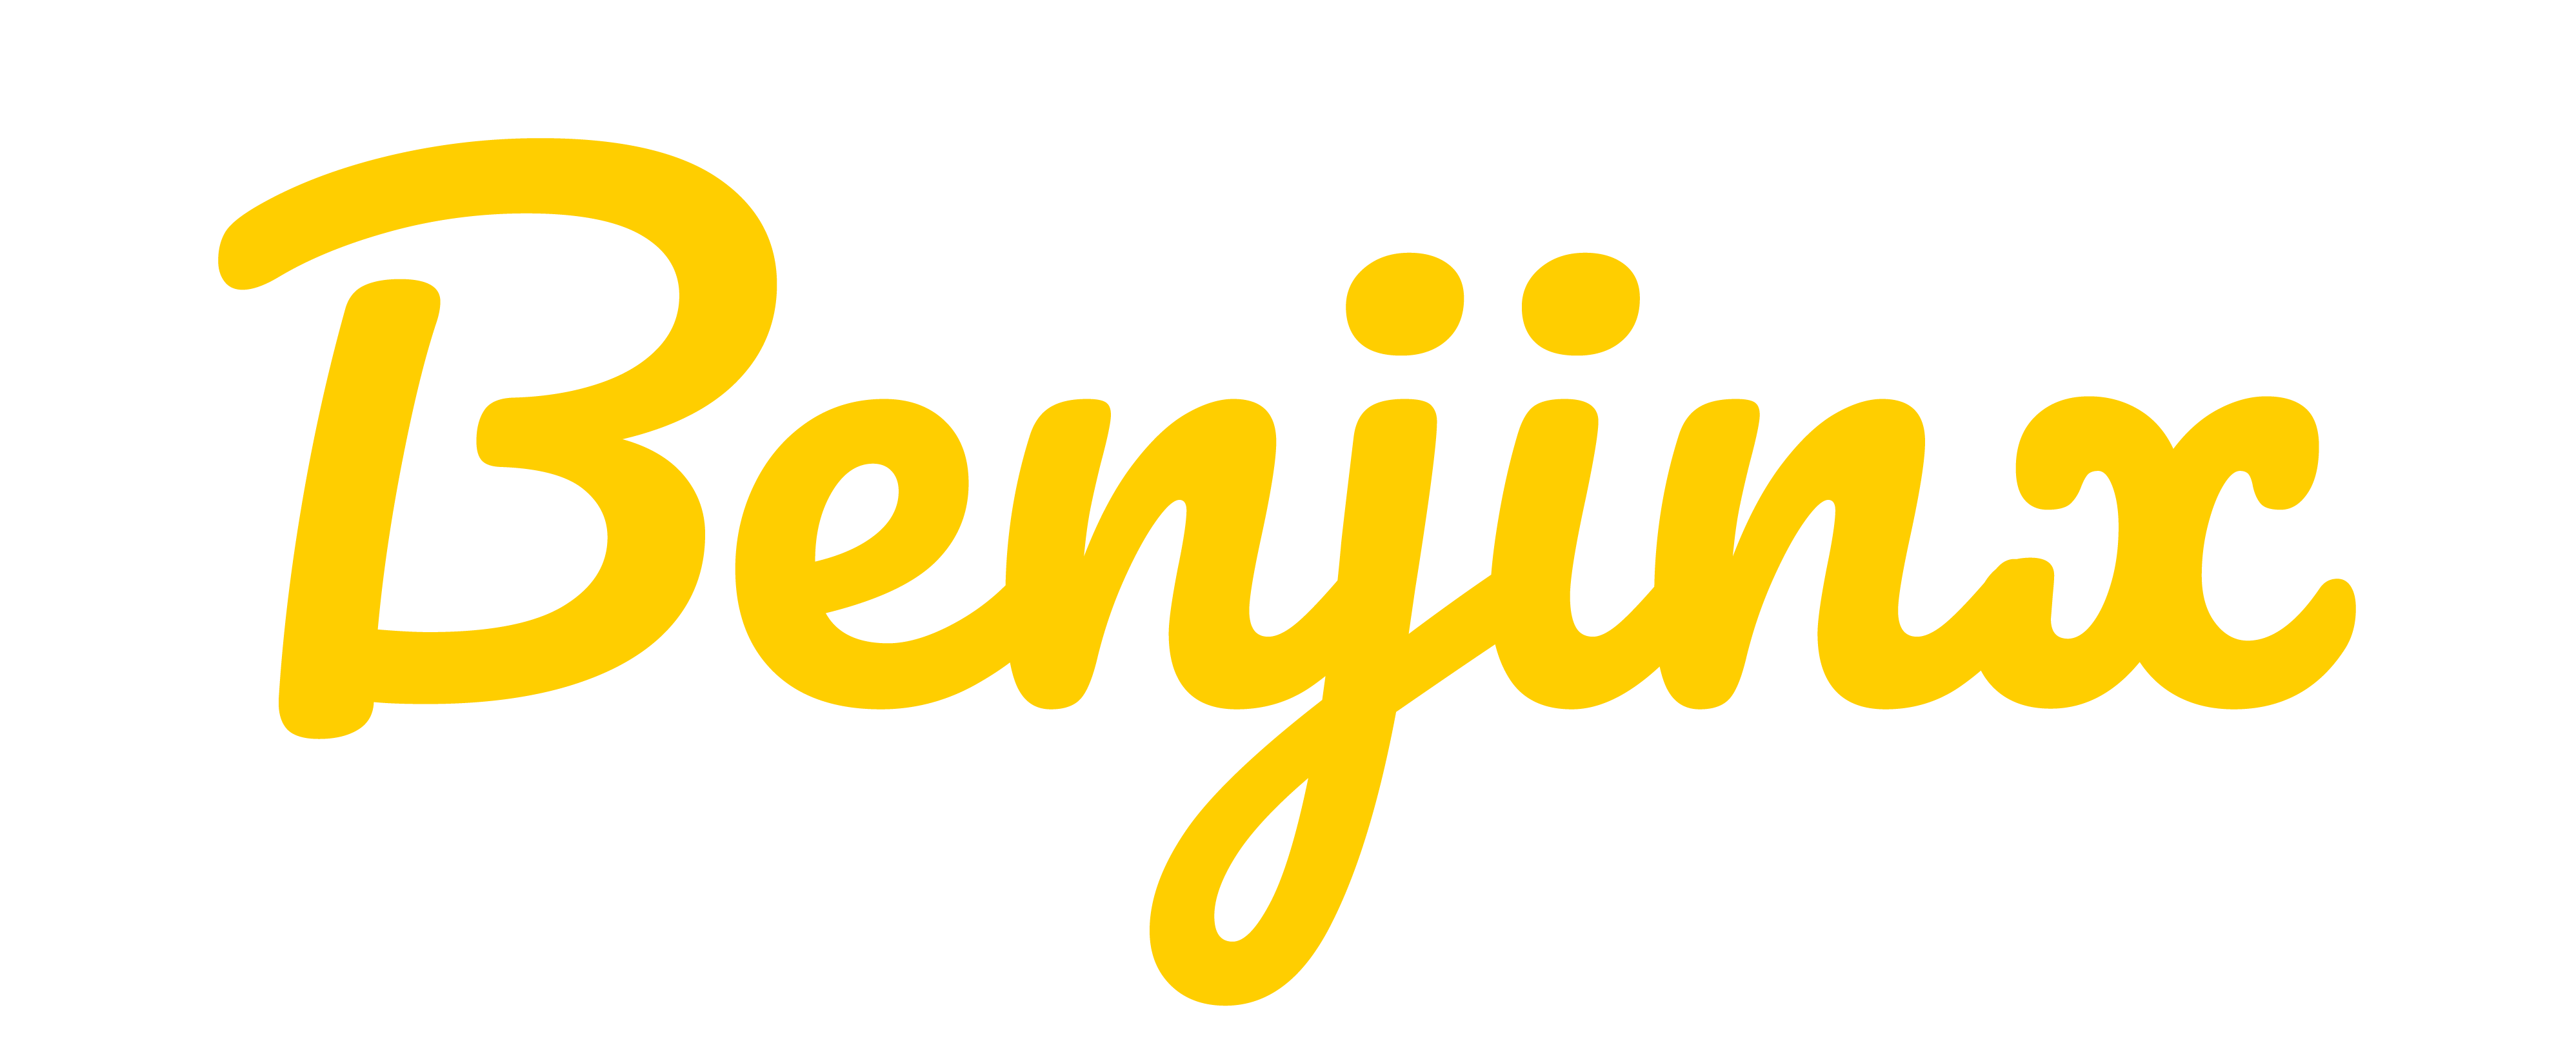 Benji Ng